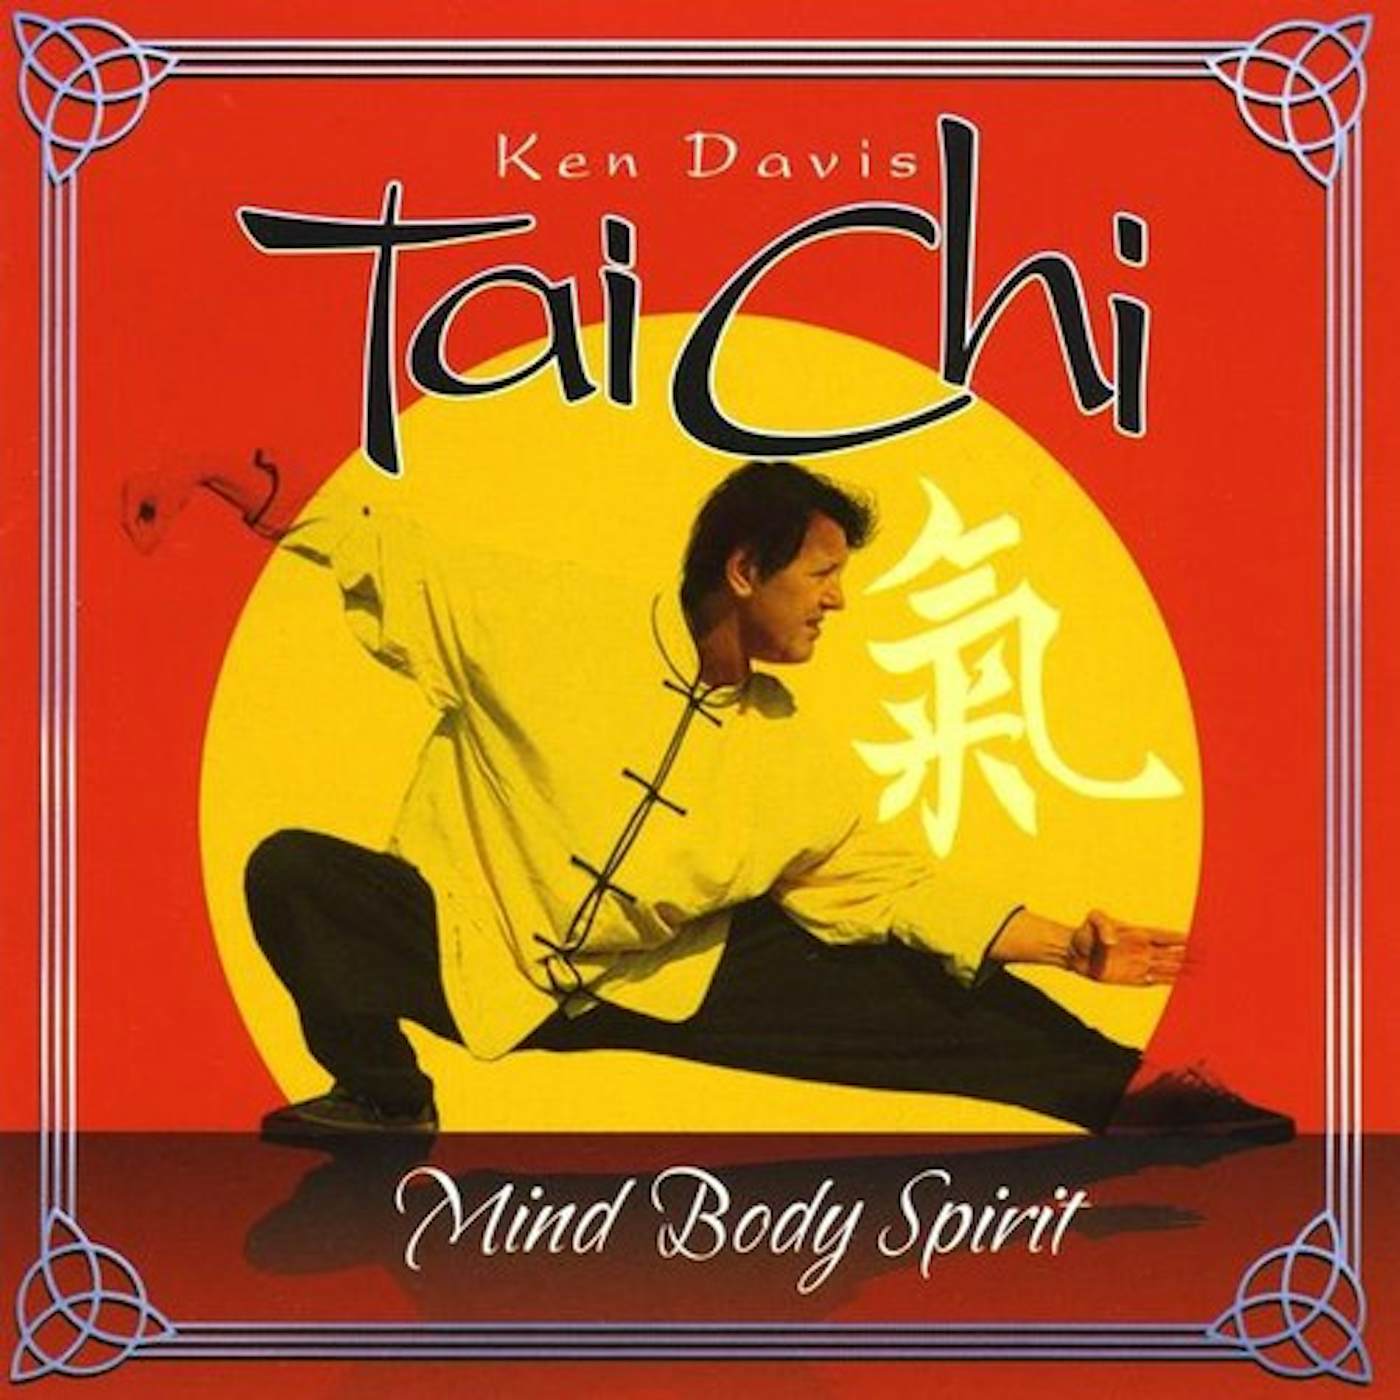 Ken Davis TAI CHI: MIND BODY SPIRIT CD